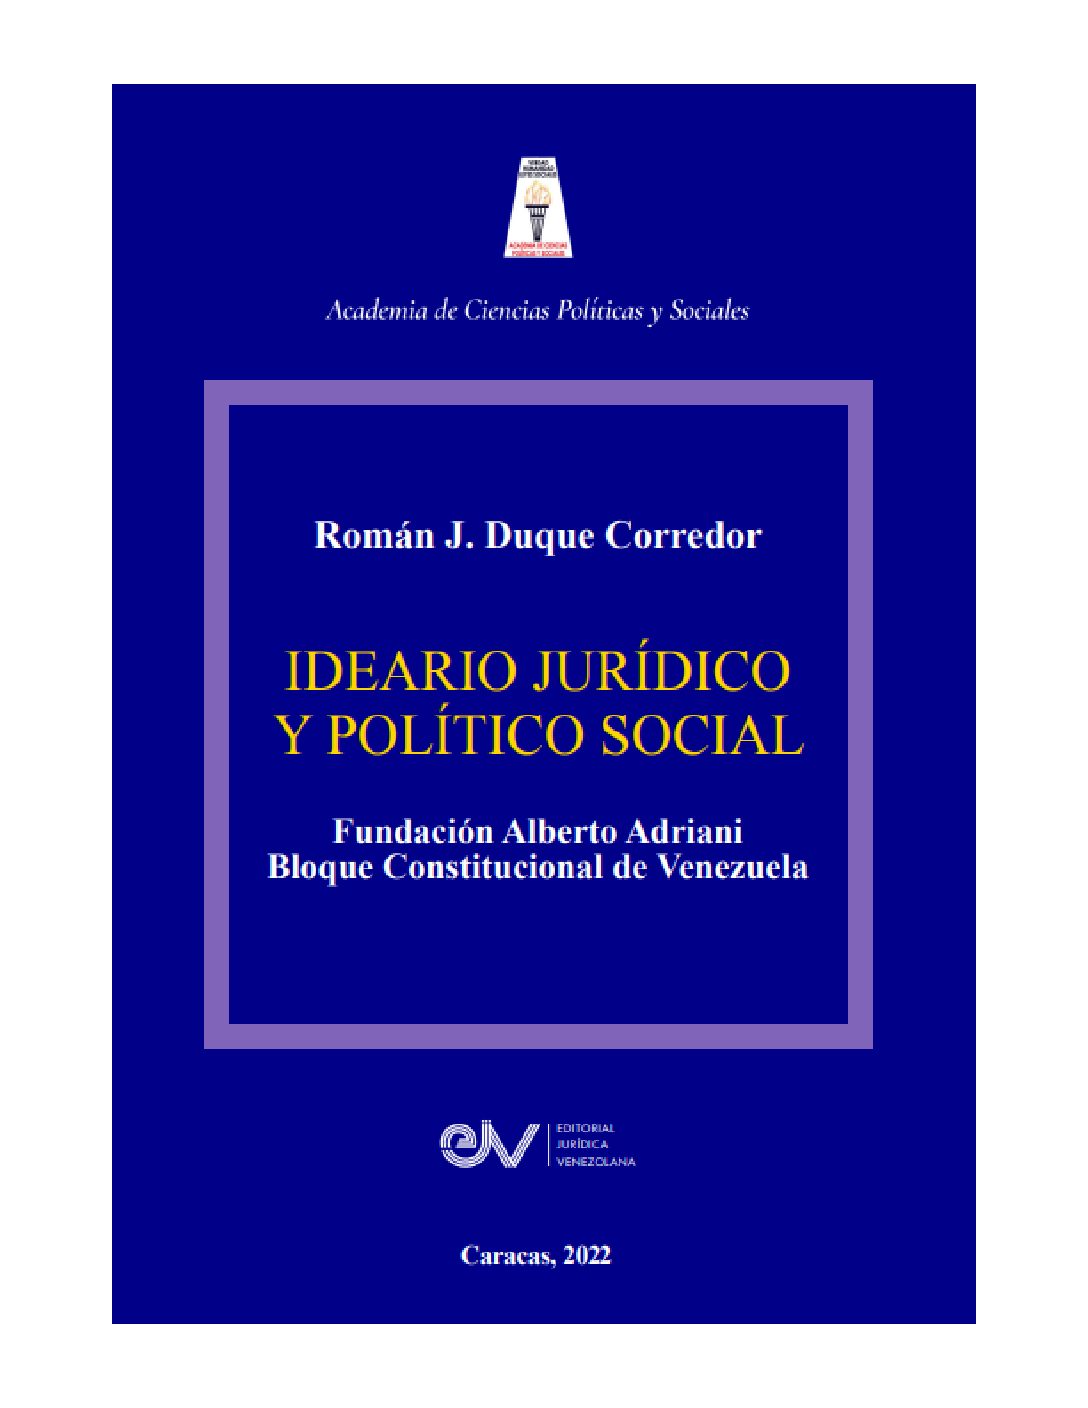 Ideario jurídico y político social. Autor: Román J. Duque Corredor